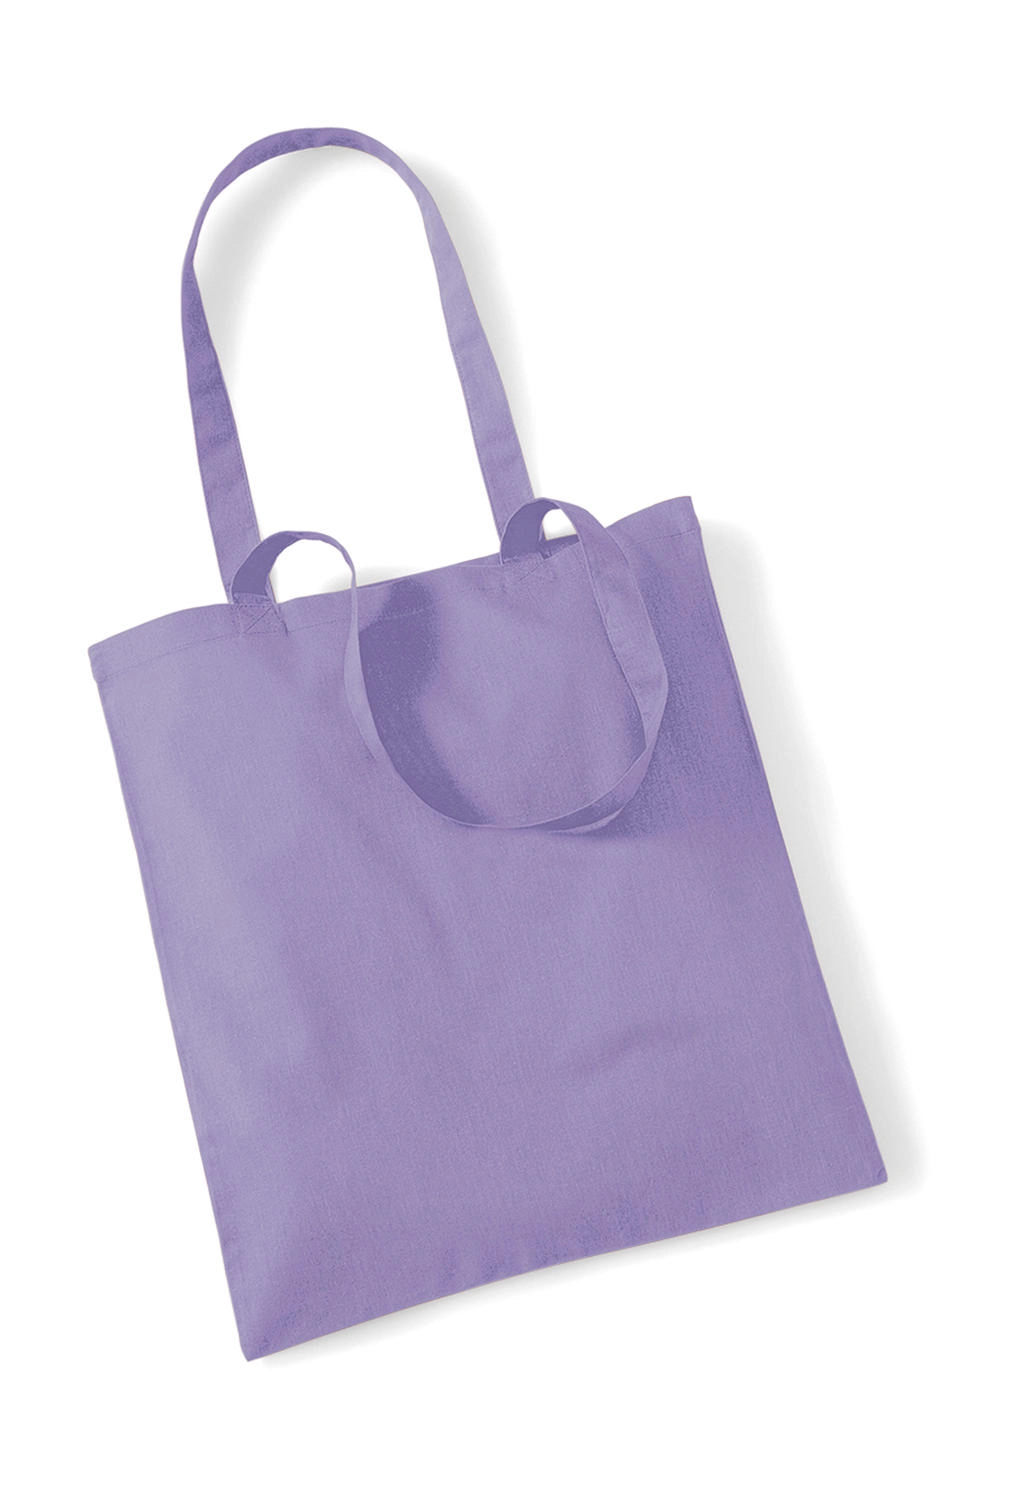 Bag for Life - Long Handles zum Besticken und Bedrucken in der Farbe Lavender mit Ihren Logo, Schriftzug oder Motiv.